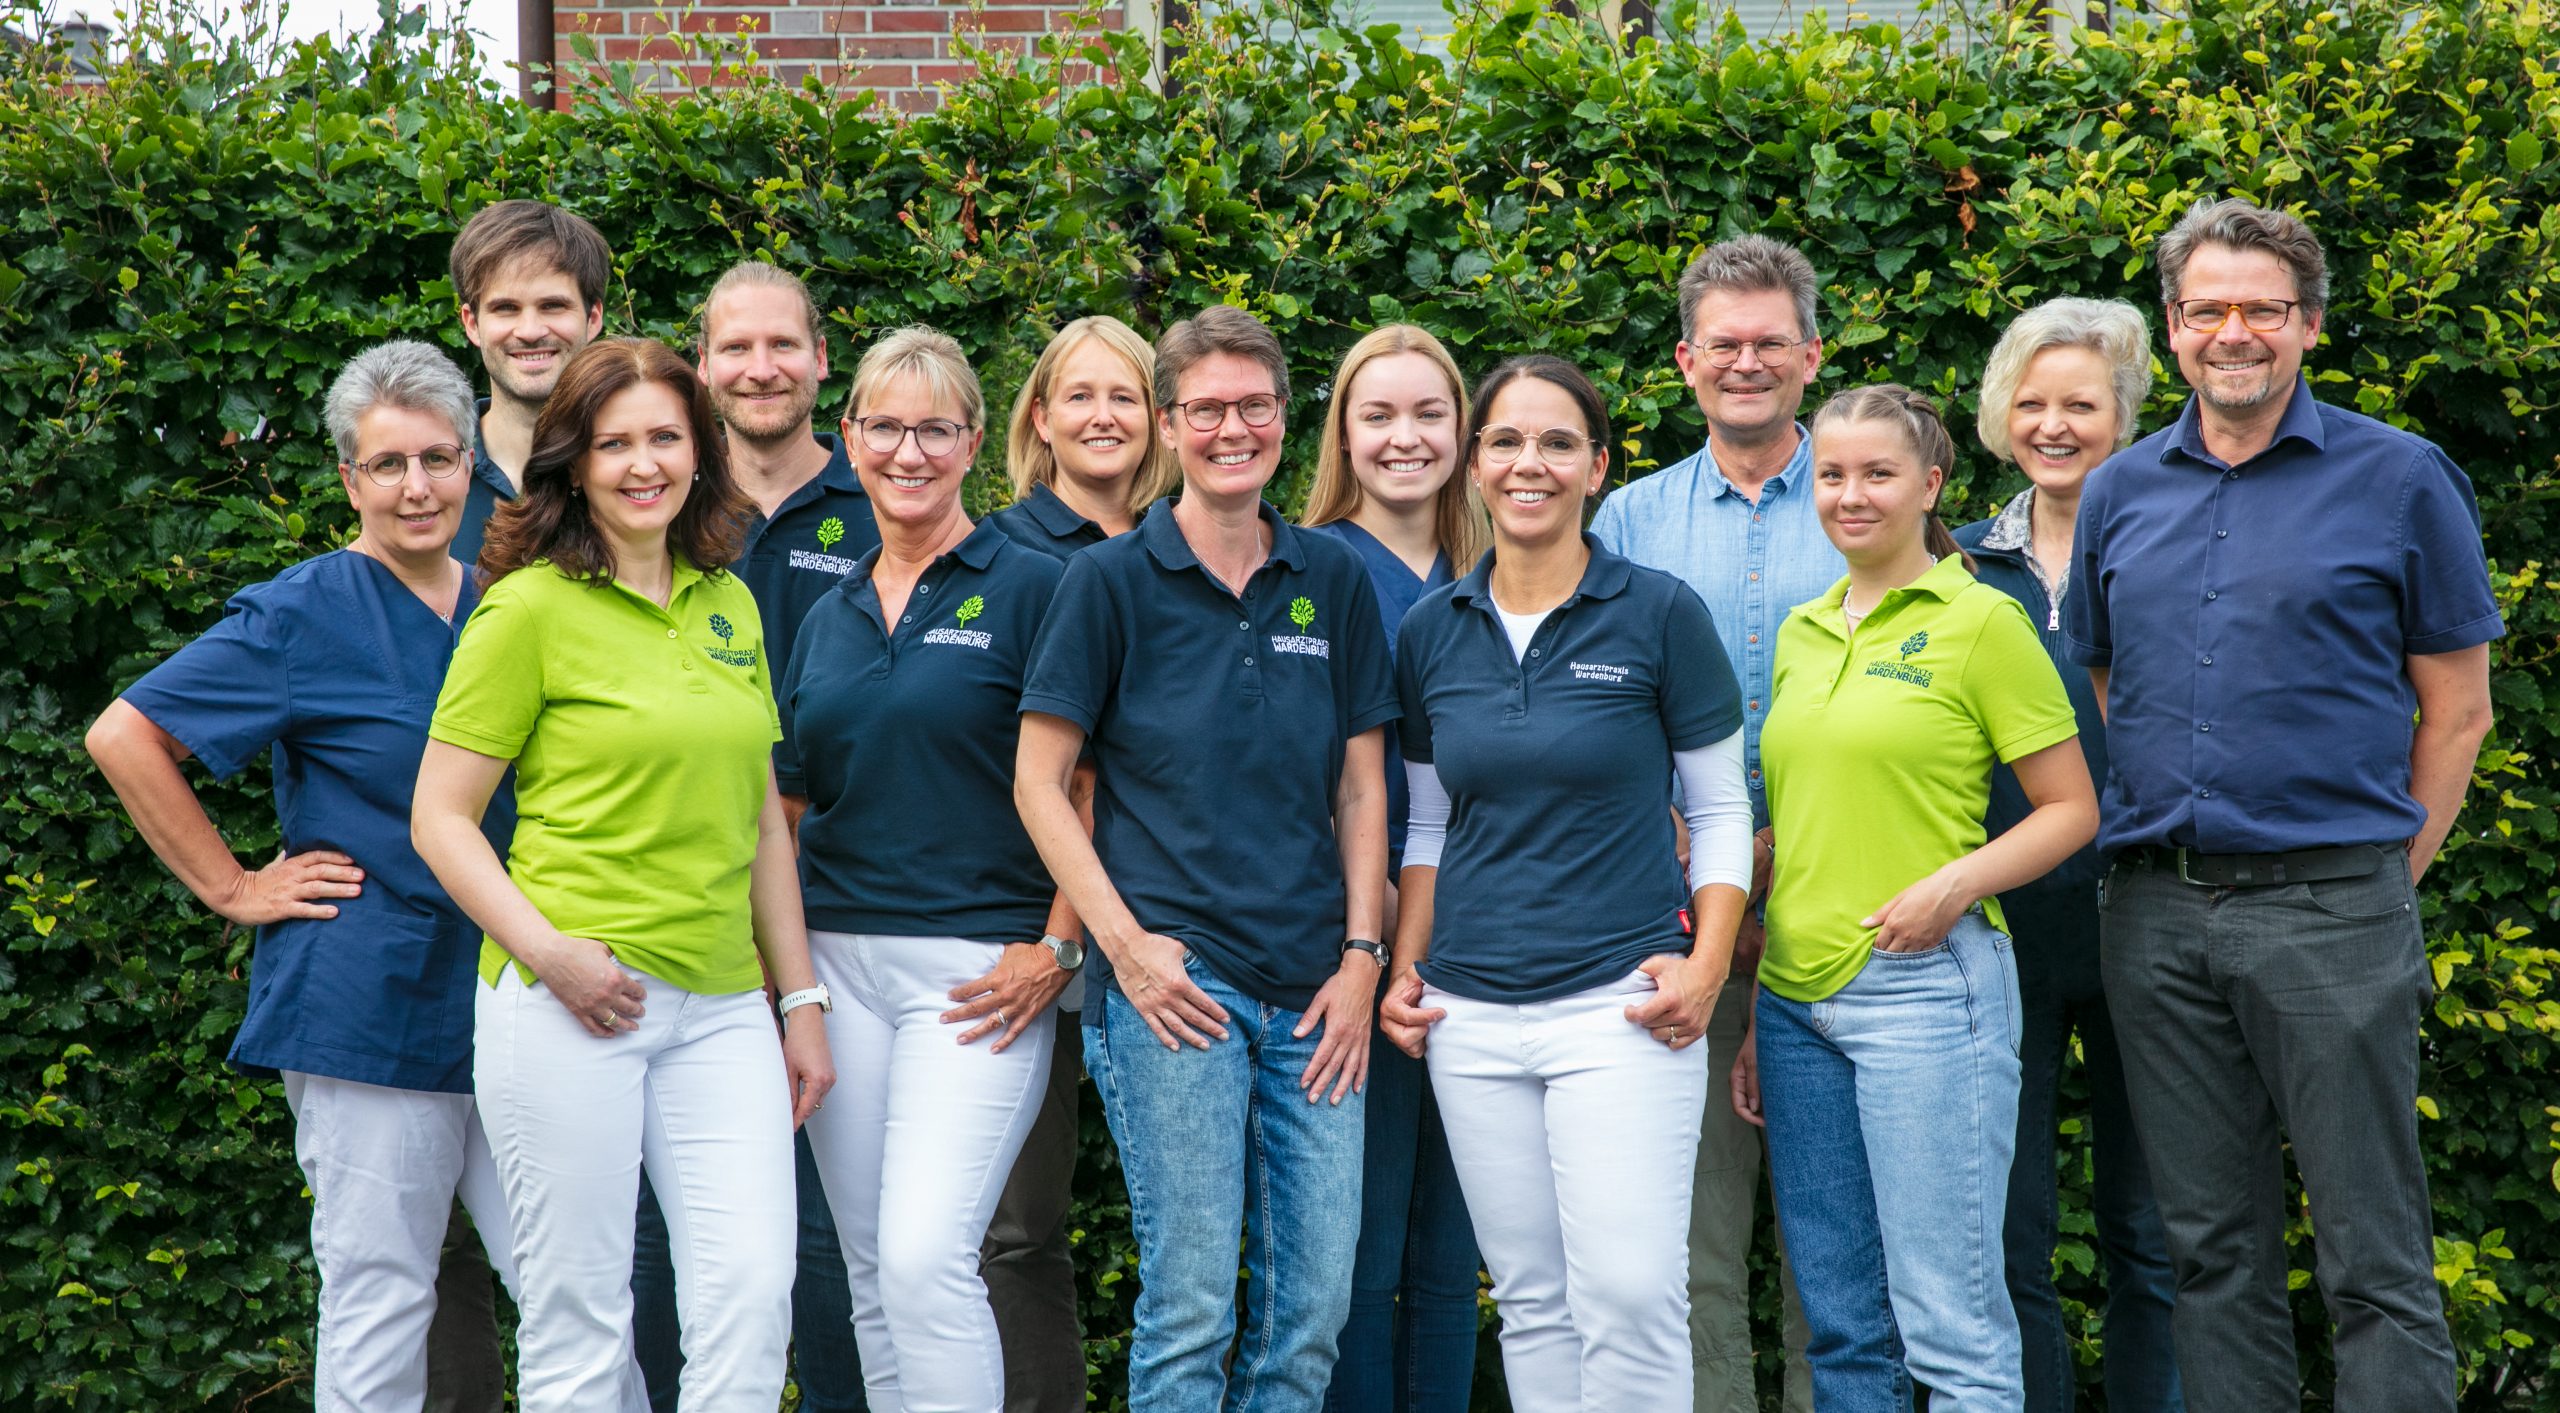 Team Hausarztpraxis Wardenburg